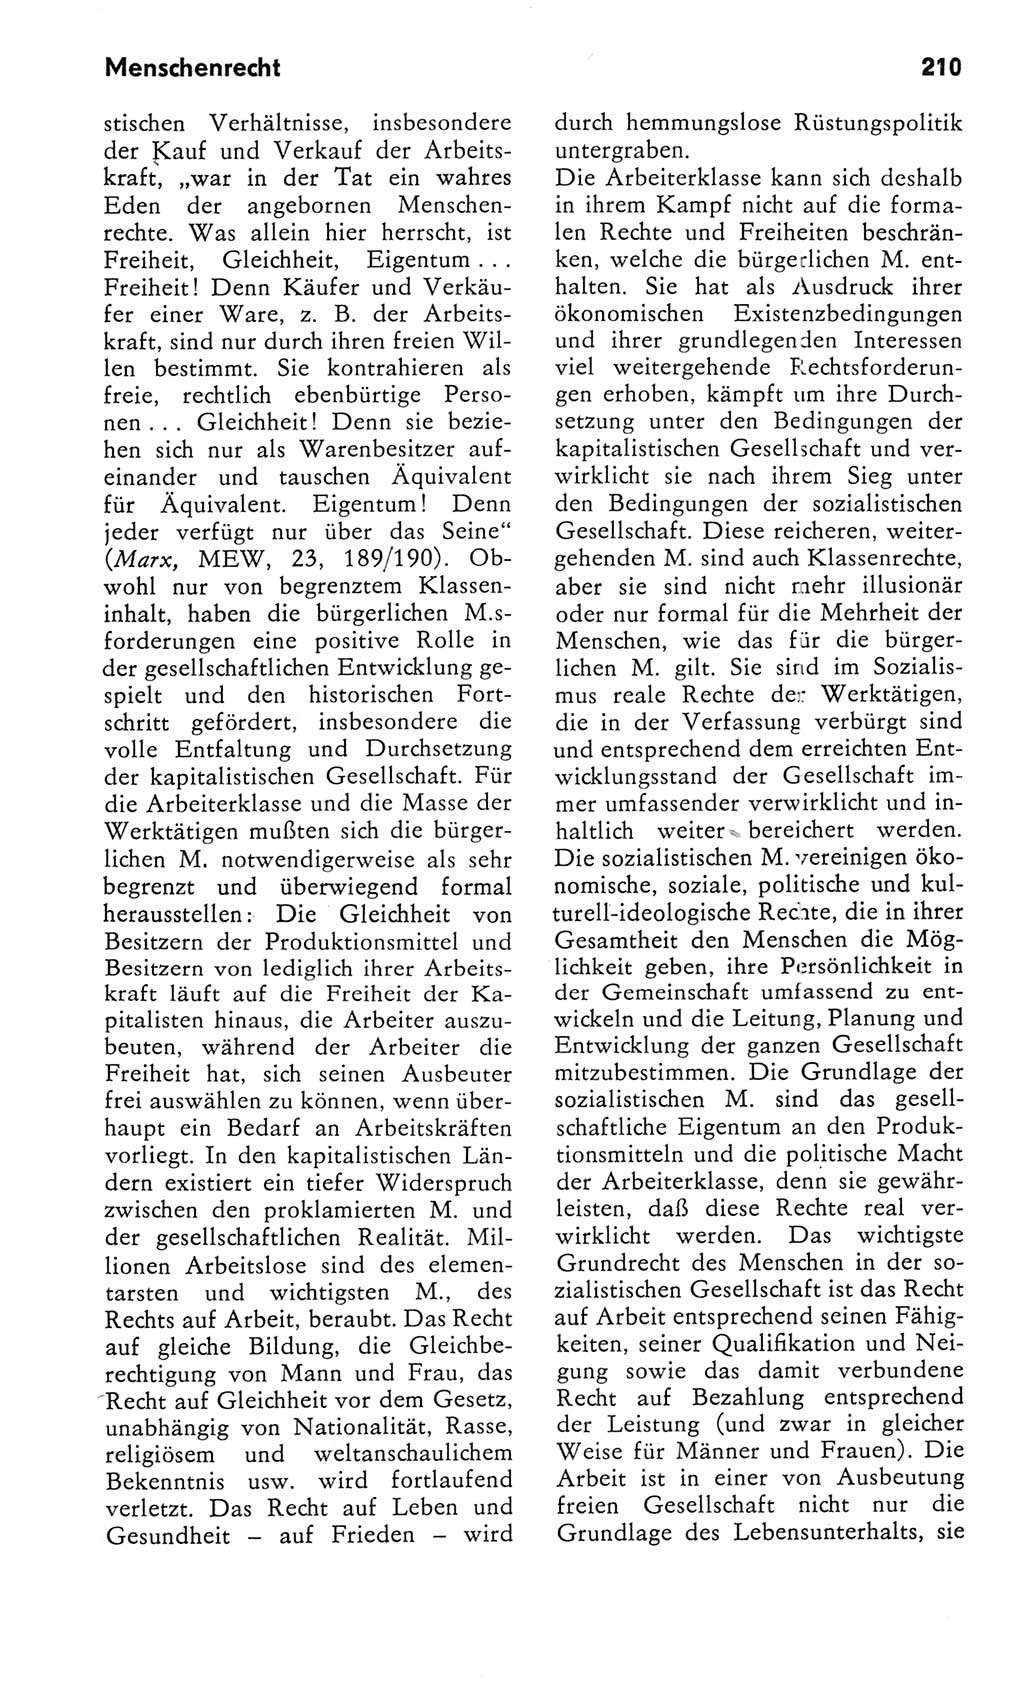 Kleines Wörterbuch der marxistisch-leninistischen Philosophie [Deutsche Demokratische Republik (DDR)] 1982, Seite 210 (Kl. Wb. ML Phil. DDR 1982, S. 210)